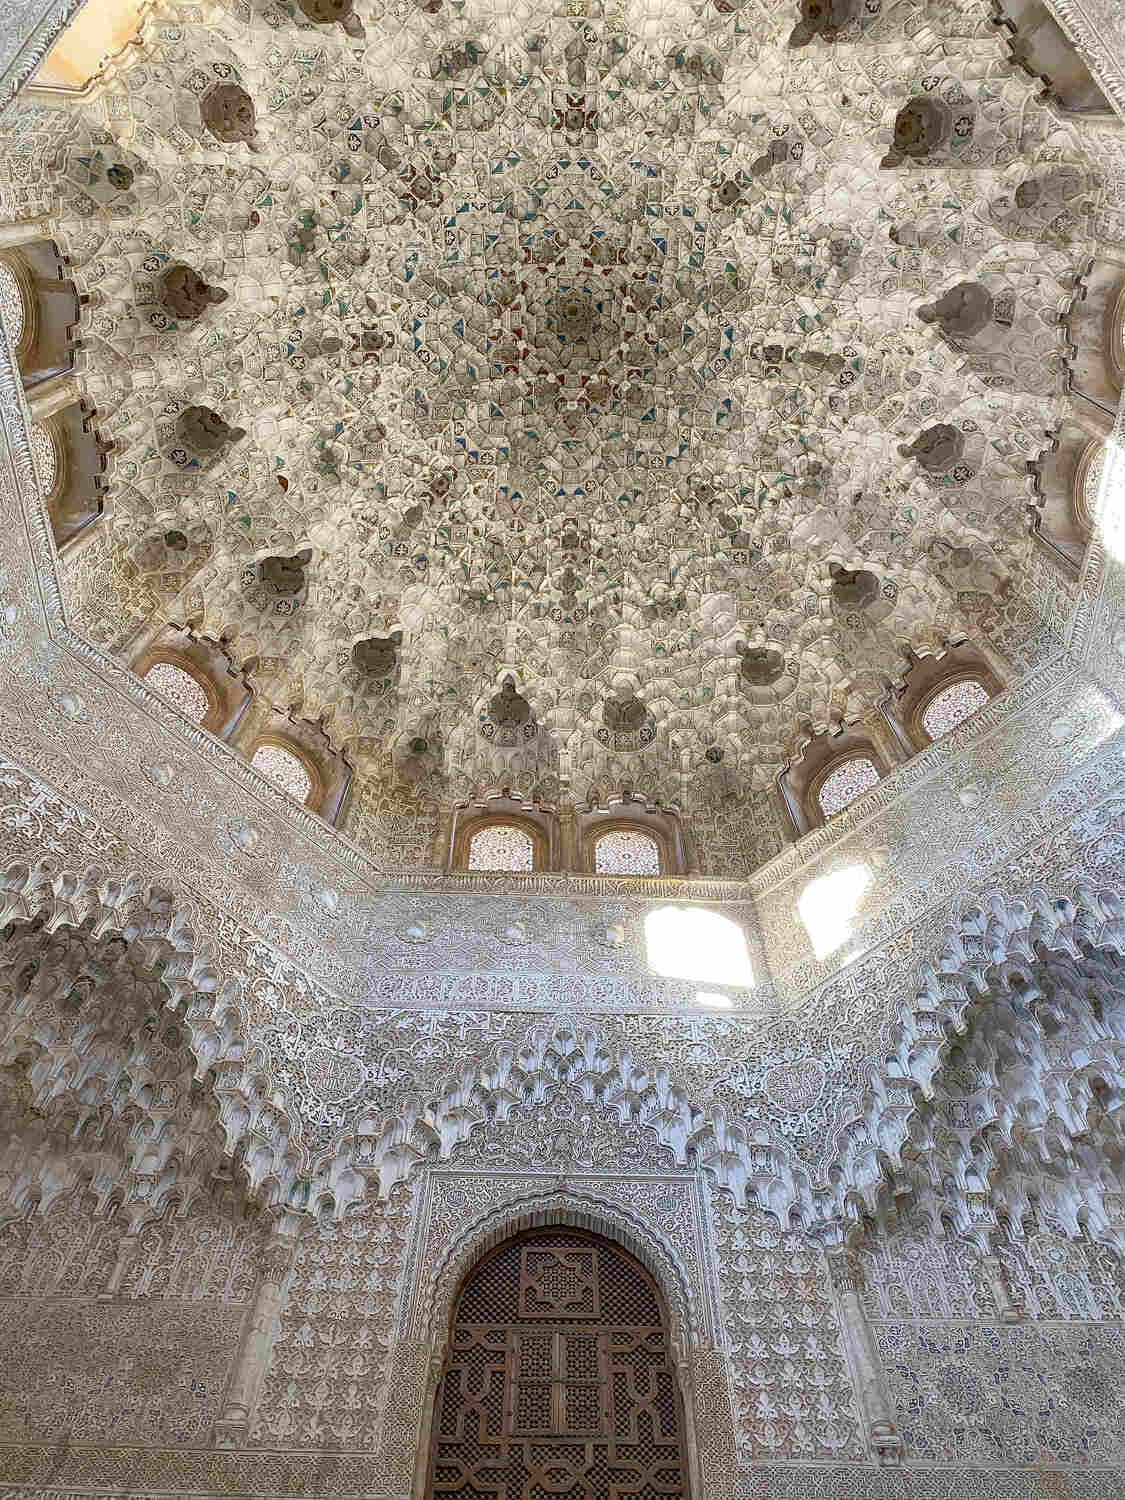 Islamic art inside the Alhambra